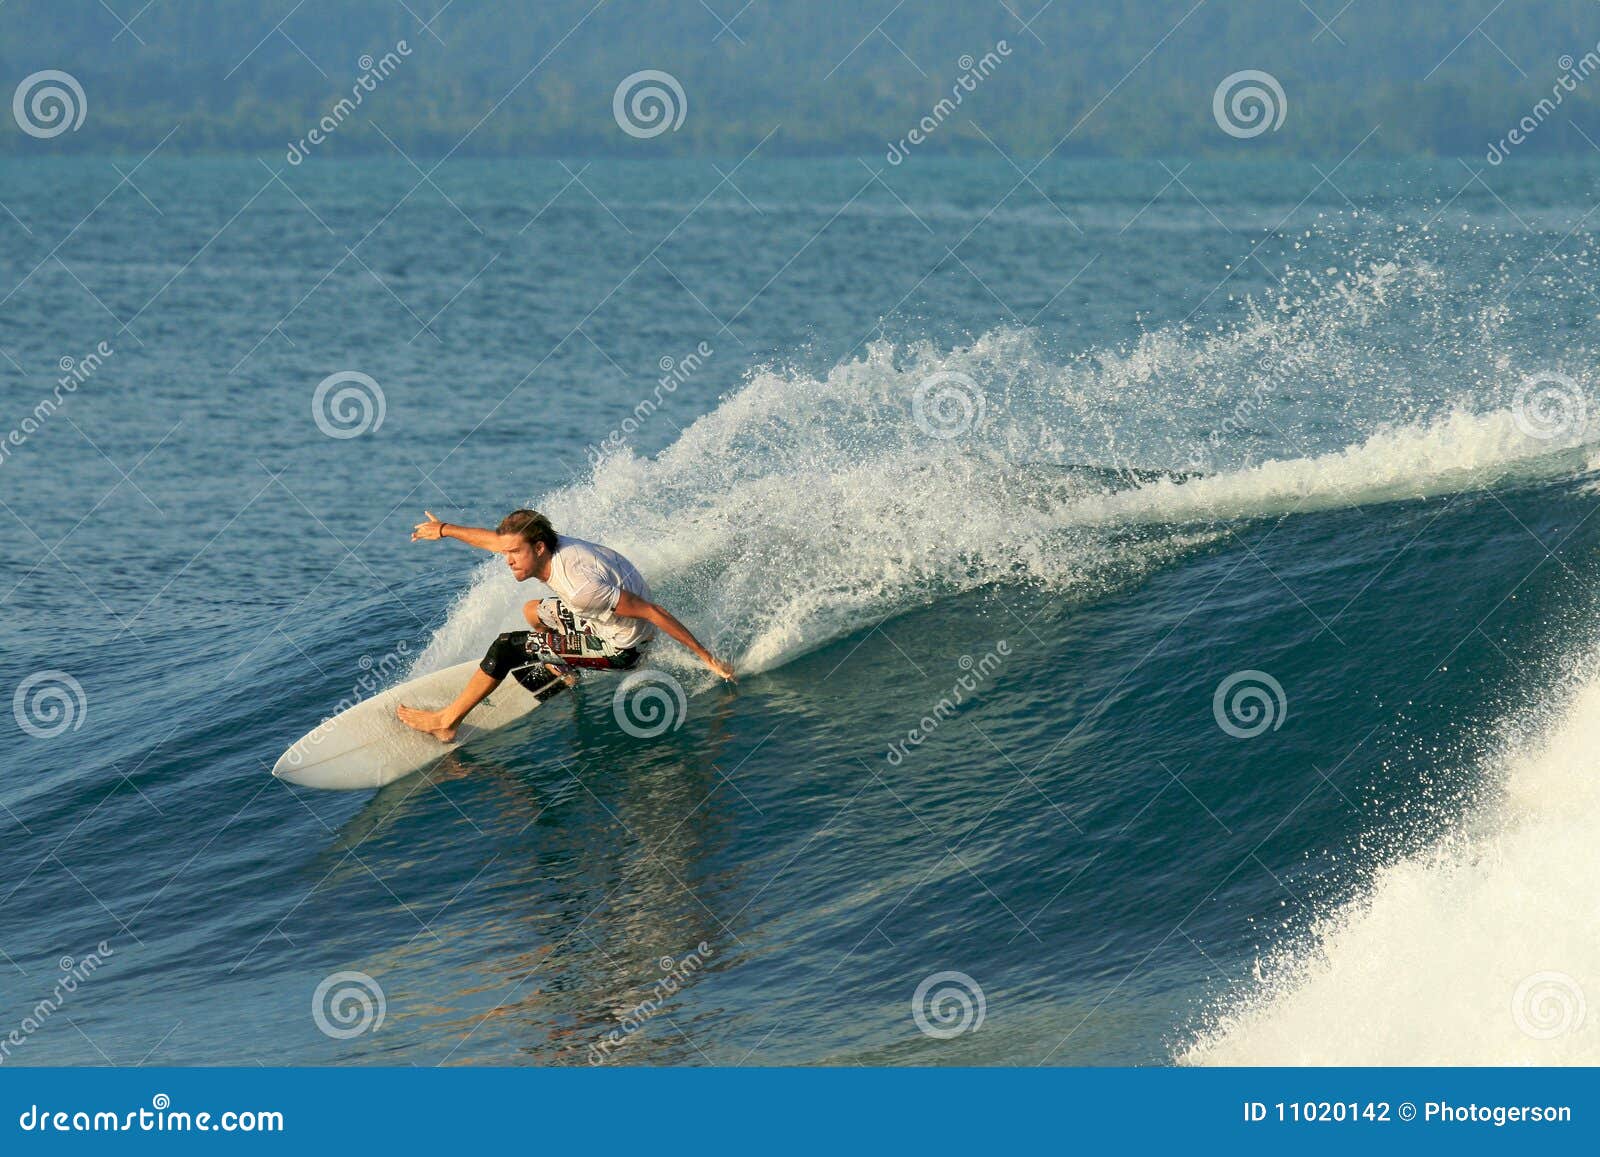 Il surfista che fa la scultura accende l'onda liscia, Mentawai. Surfista che fa intagliando manovra di riduzione sull'onda liscia e gettando spruzzo, isole di Mentawai, Indonesia